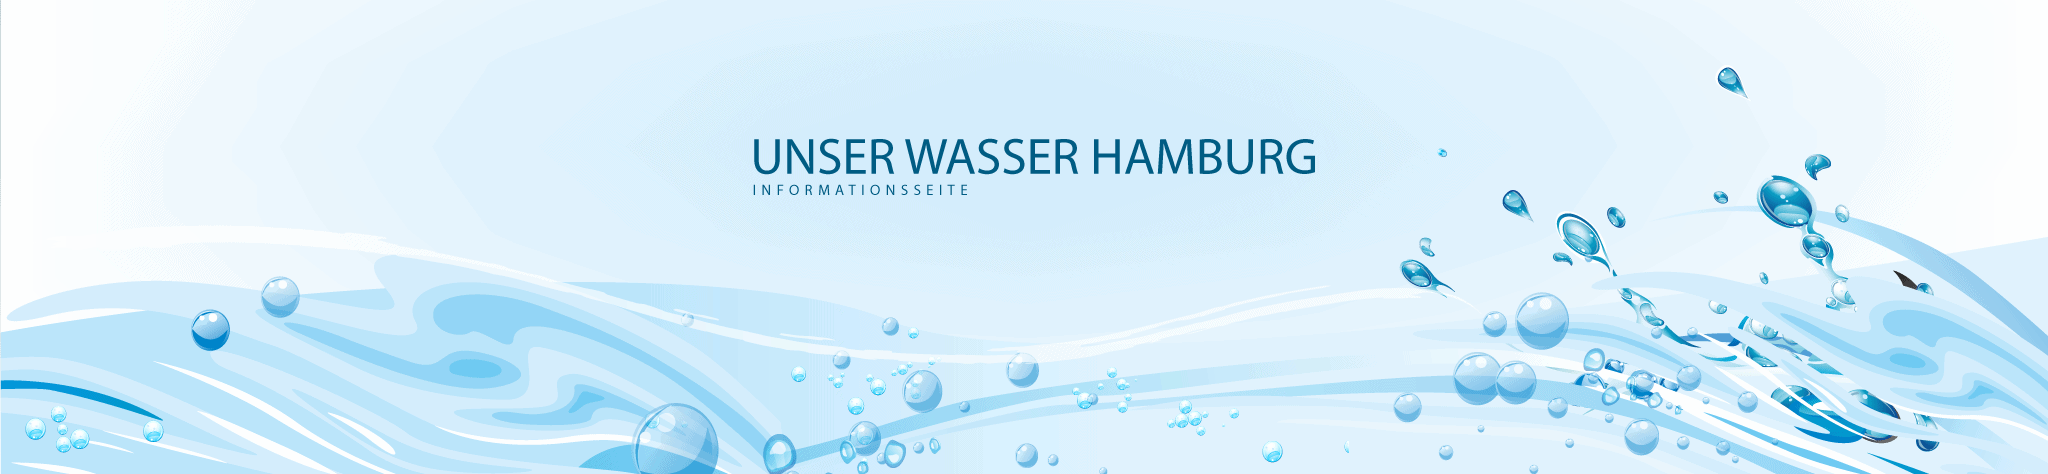 Unser Wasser Hamburg breites Banner